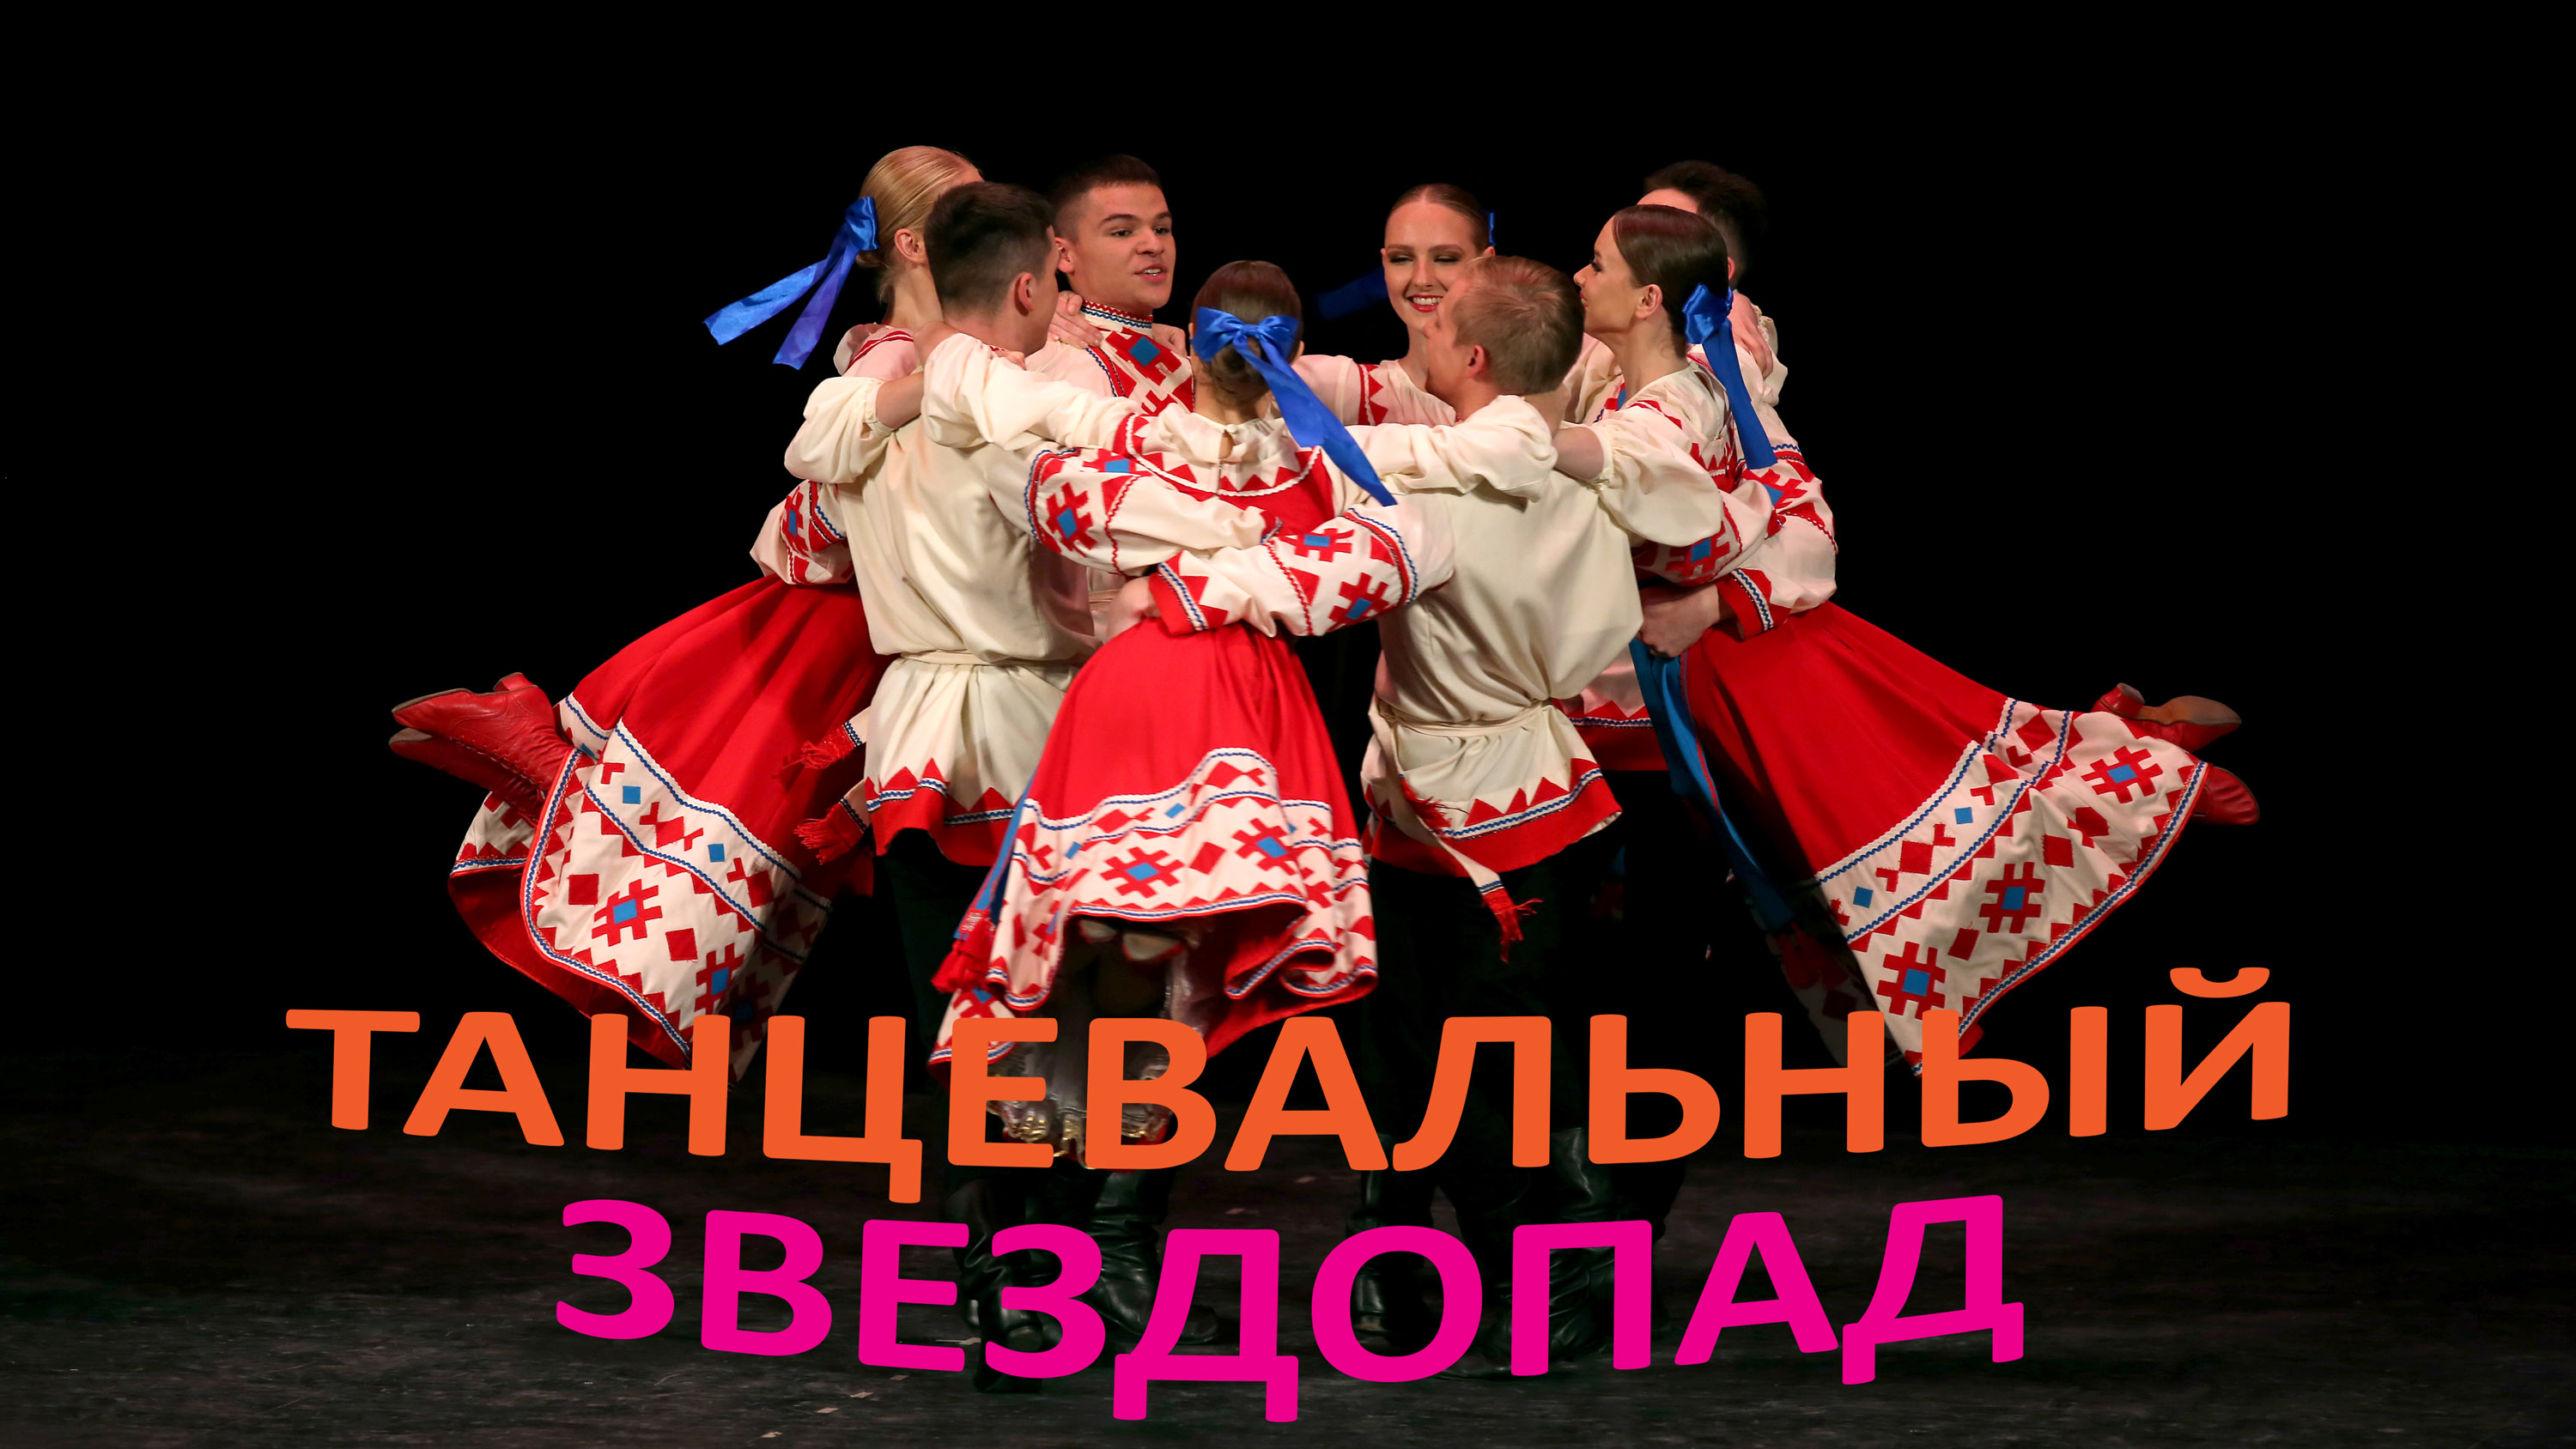 "Колесо", Ансамбль народного танца МГКИ. "Wheel", Folk Dance Ensemble MGKI.